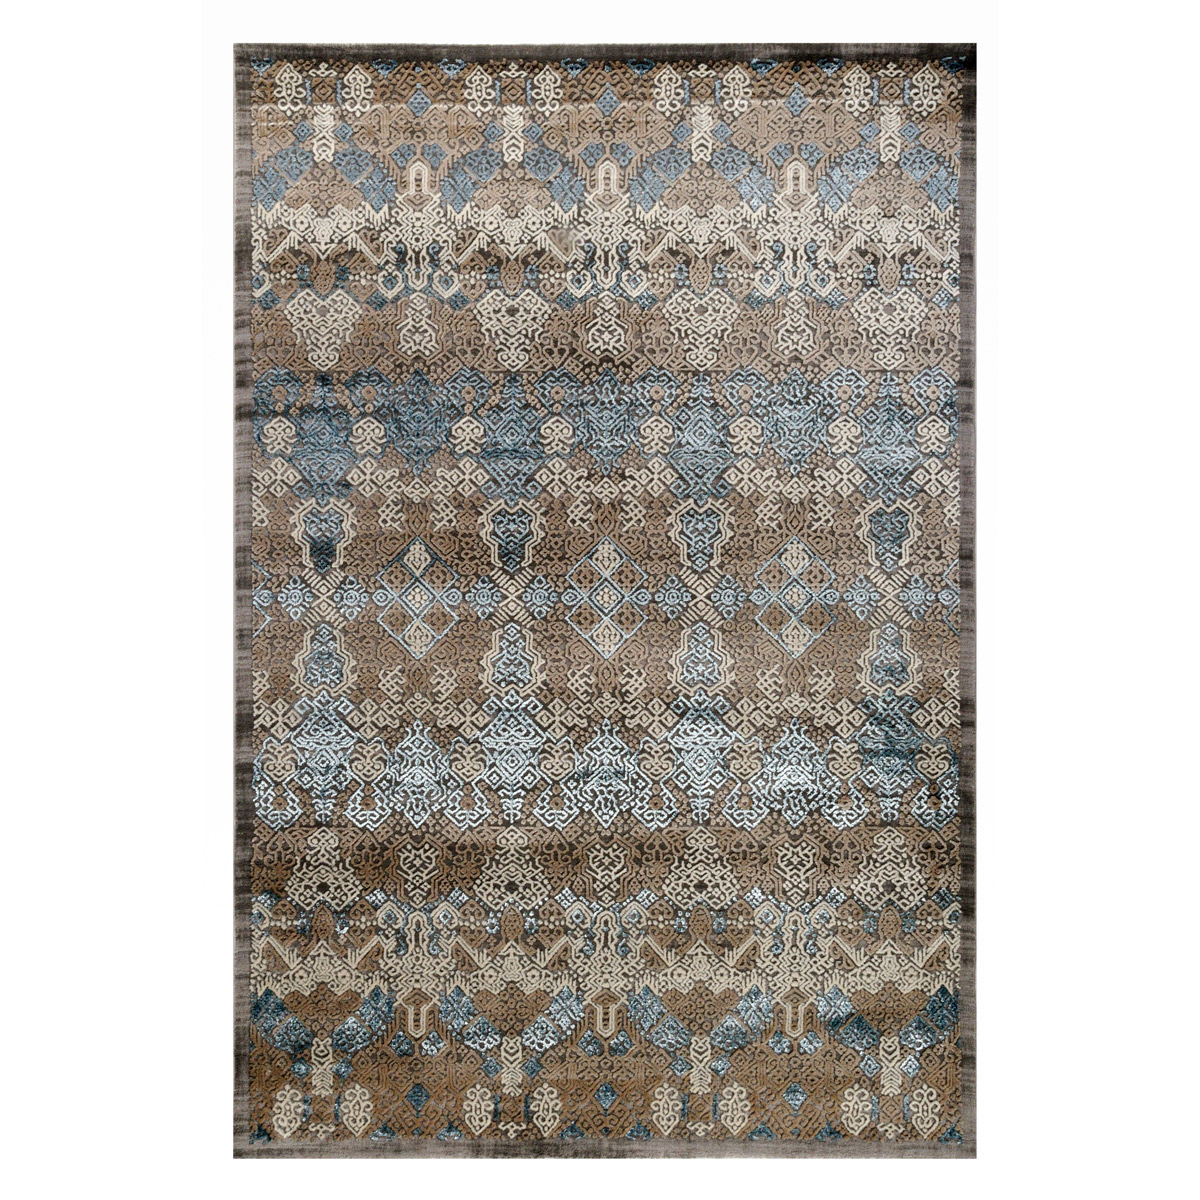 Χαλιά Κρεβατοκάμαρας (Σετ 3τμχ) Tzikas Carpets Elite 16967-953 131852